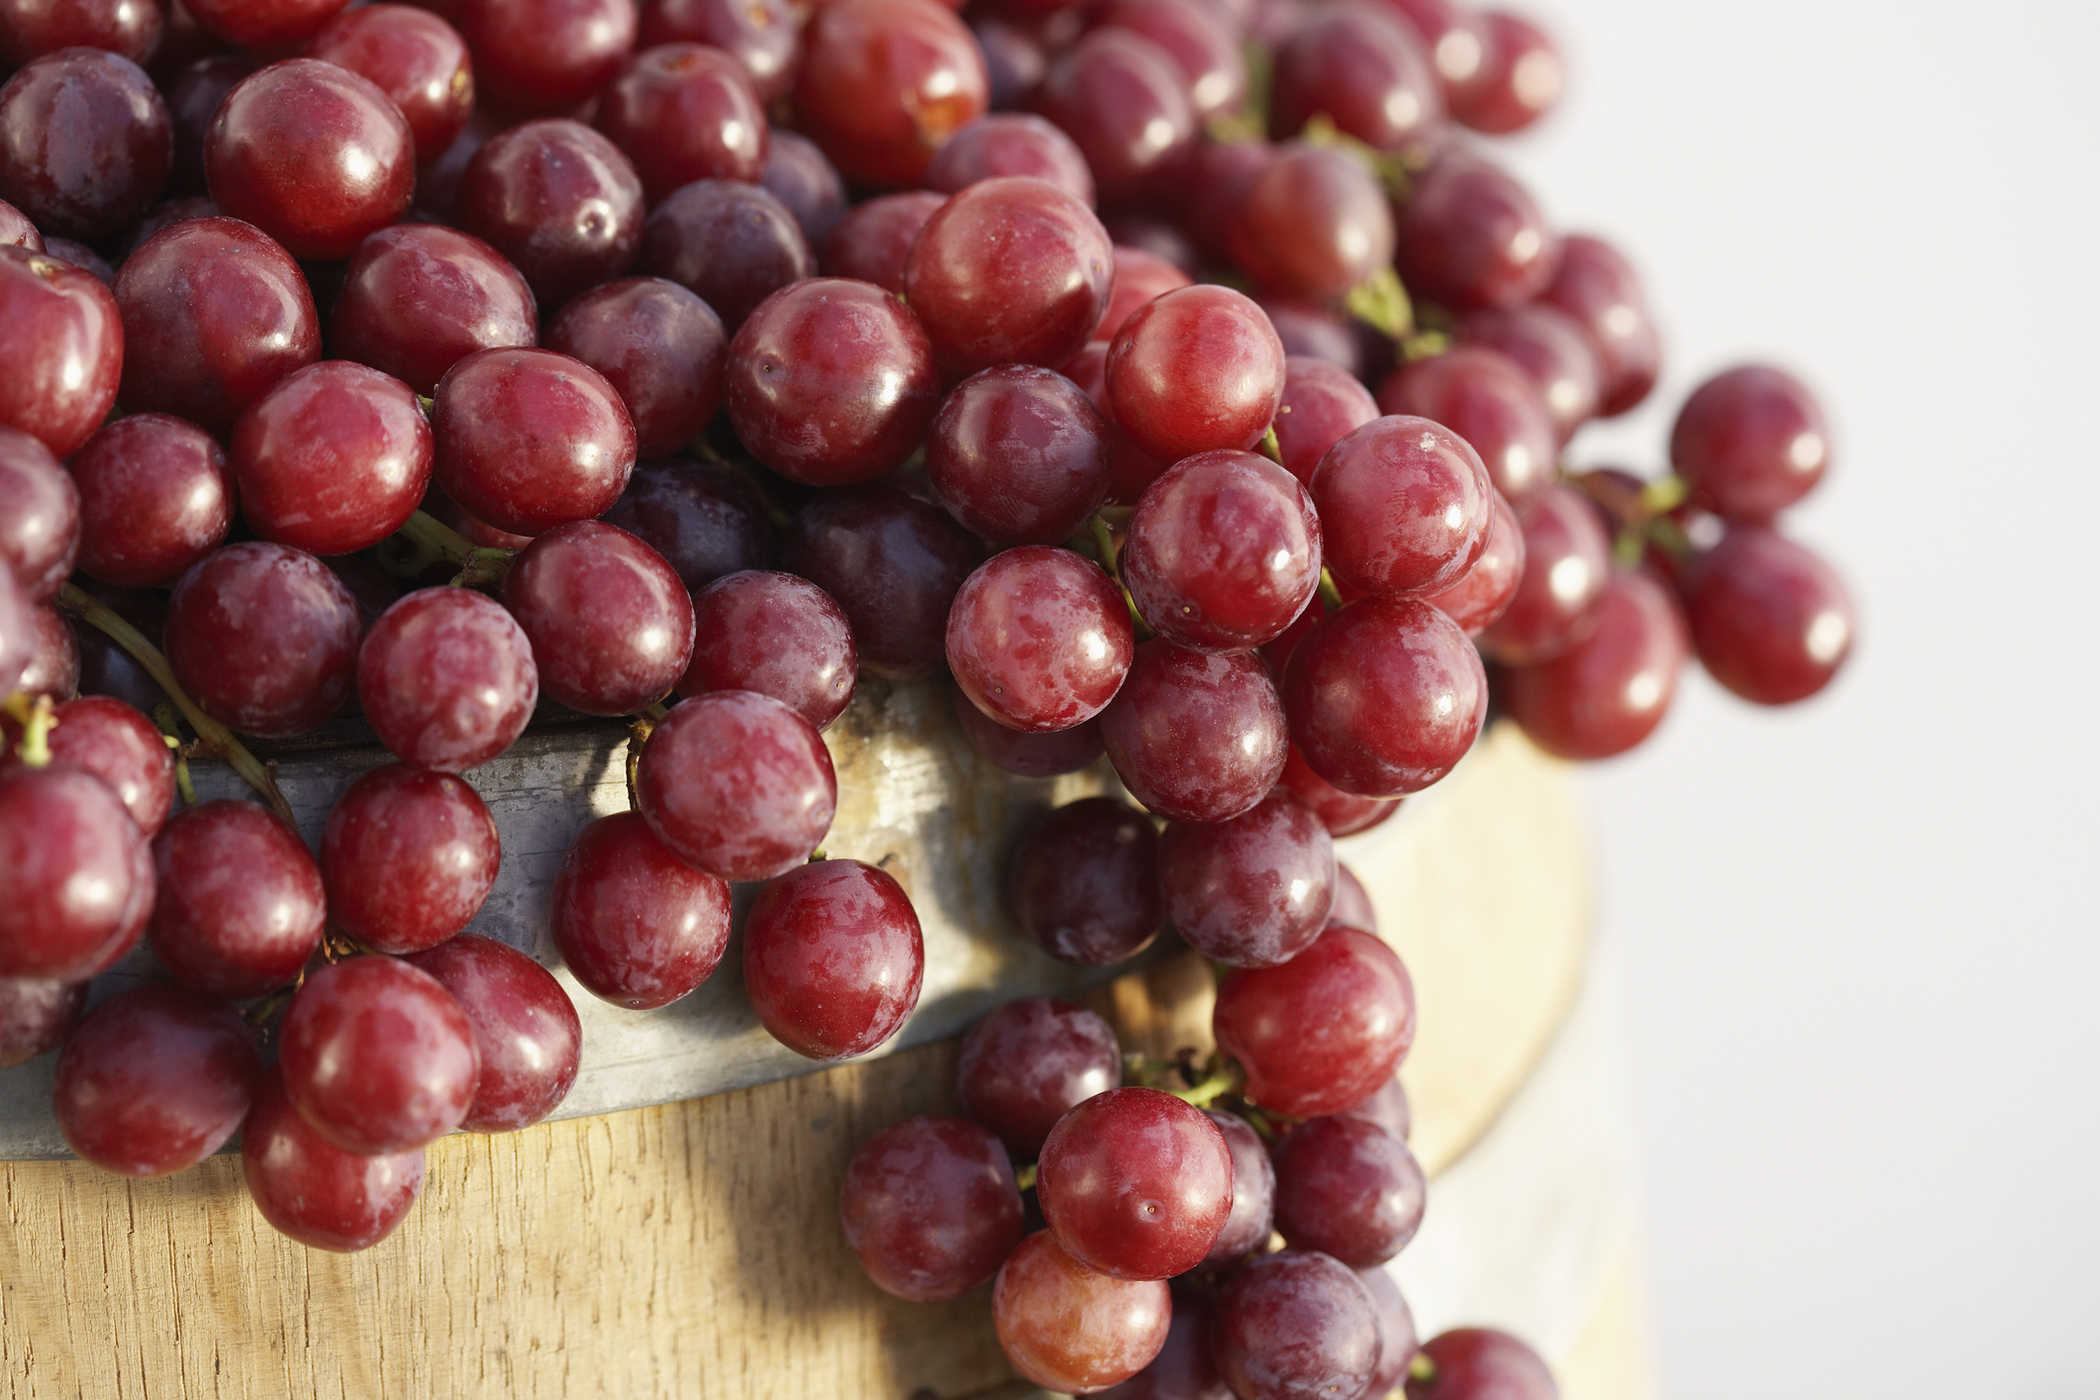 8 benefici dell'uva per la salute, uno dei quali aiuta a perdere peso